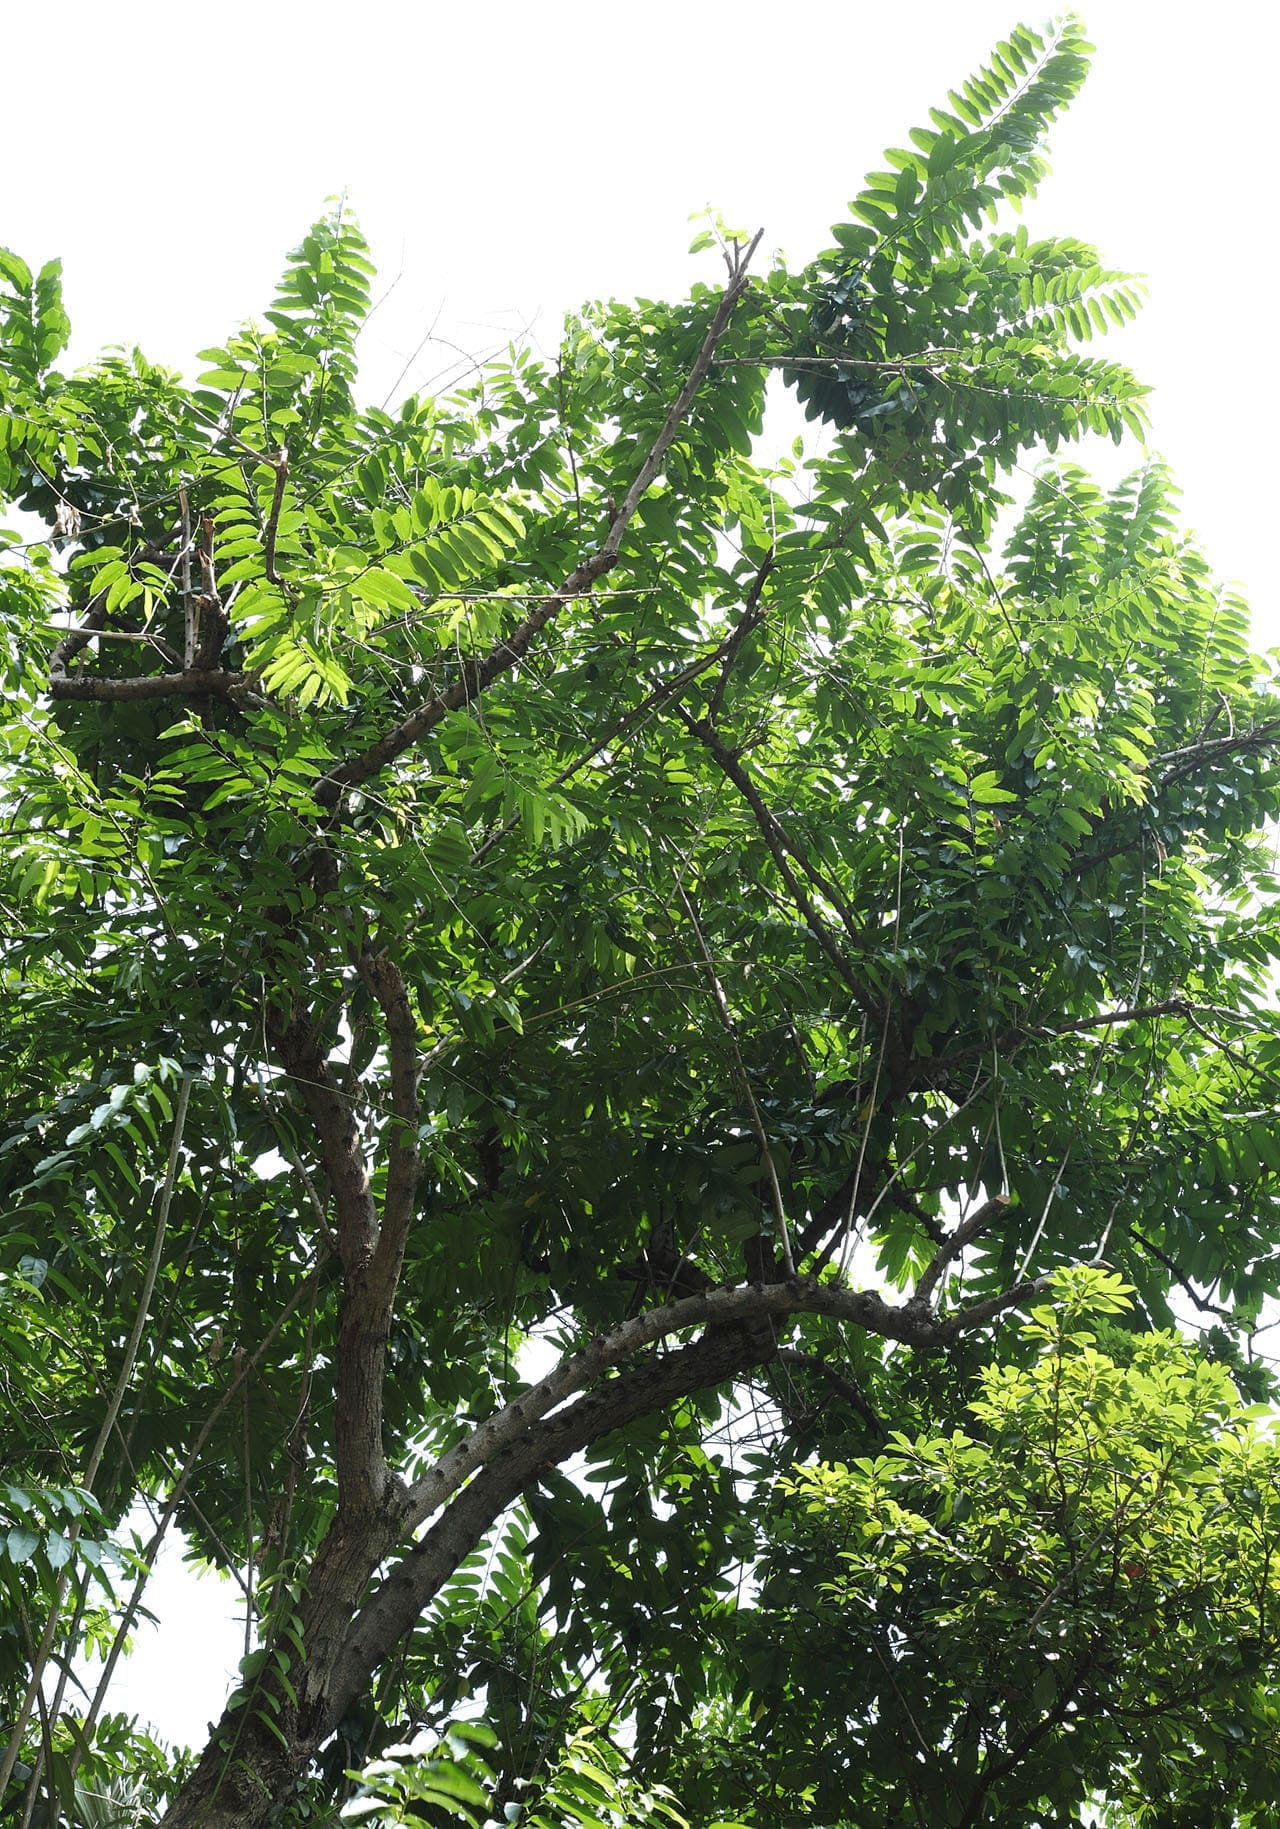 Hydnocarpus anthelminthicus